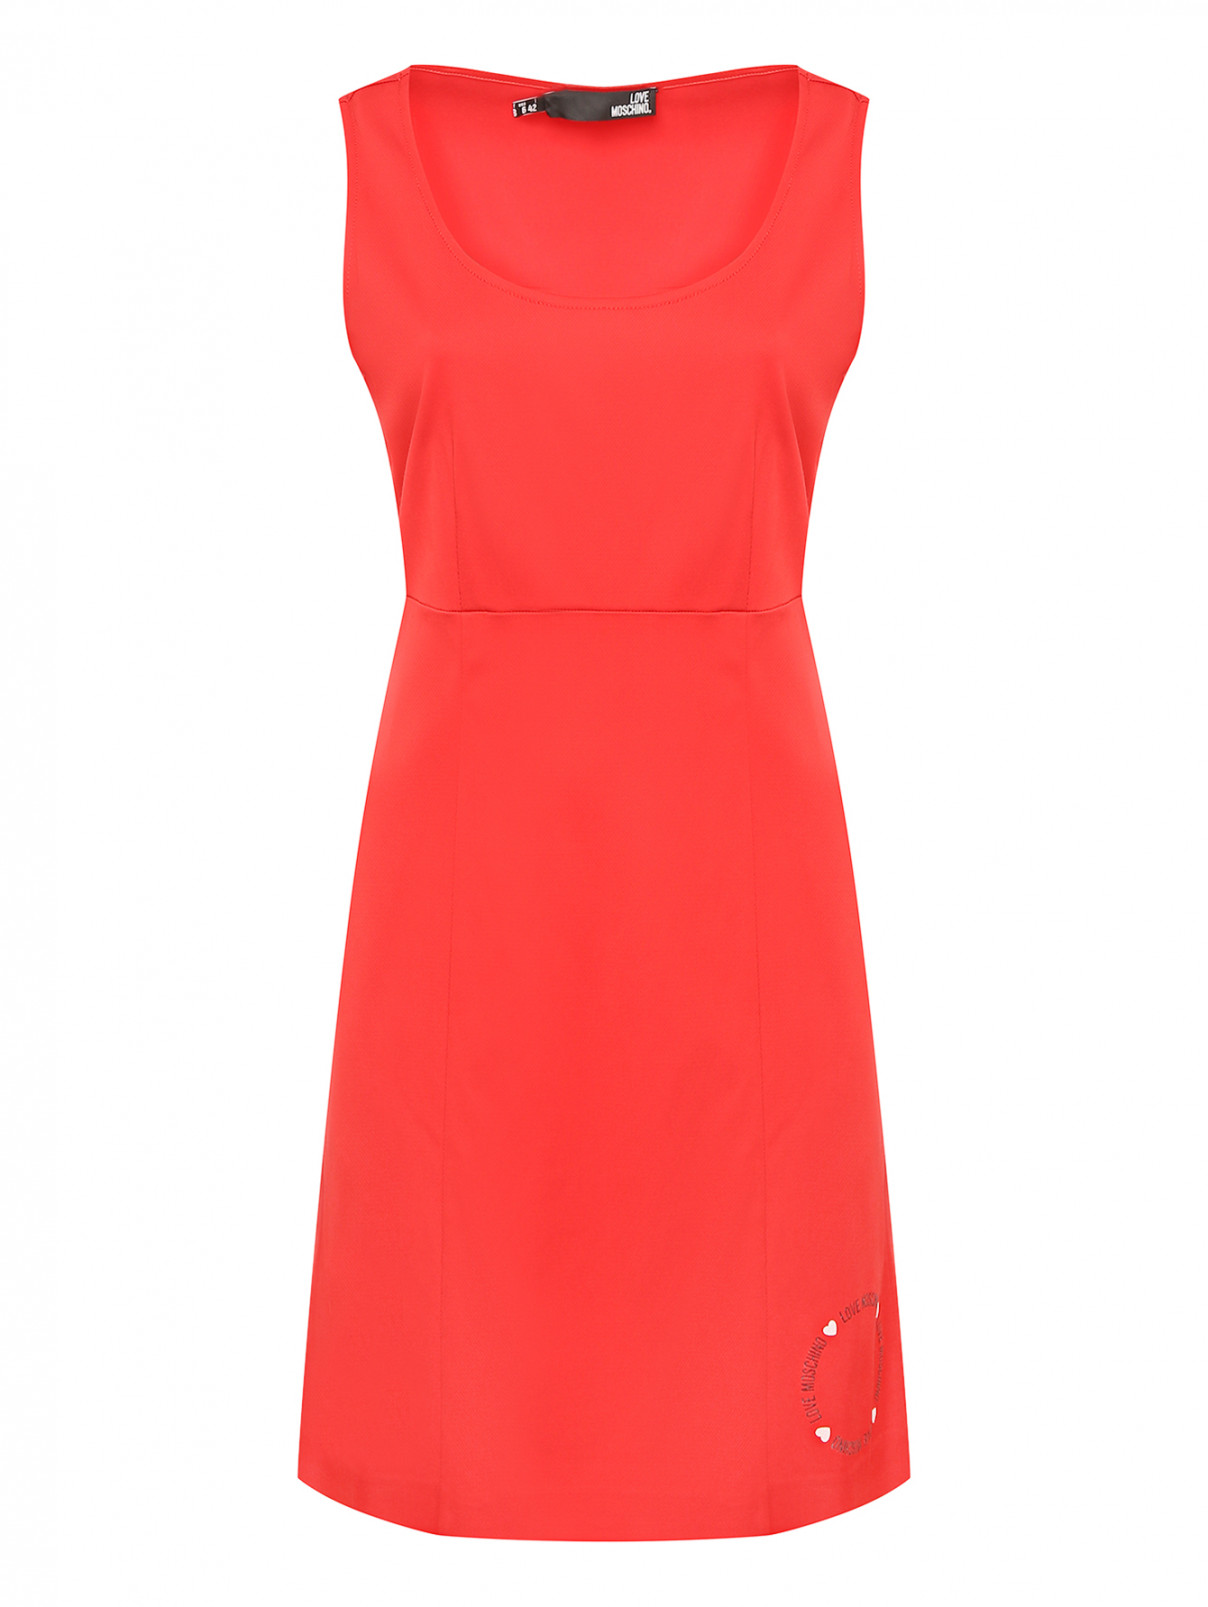 Мини-платье с принтом Love Moschino  –  Общий вид  – Цвет:  Красный